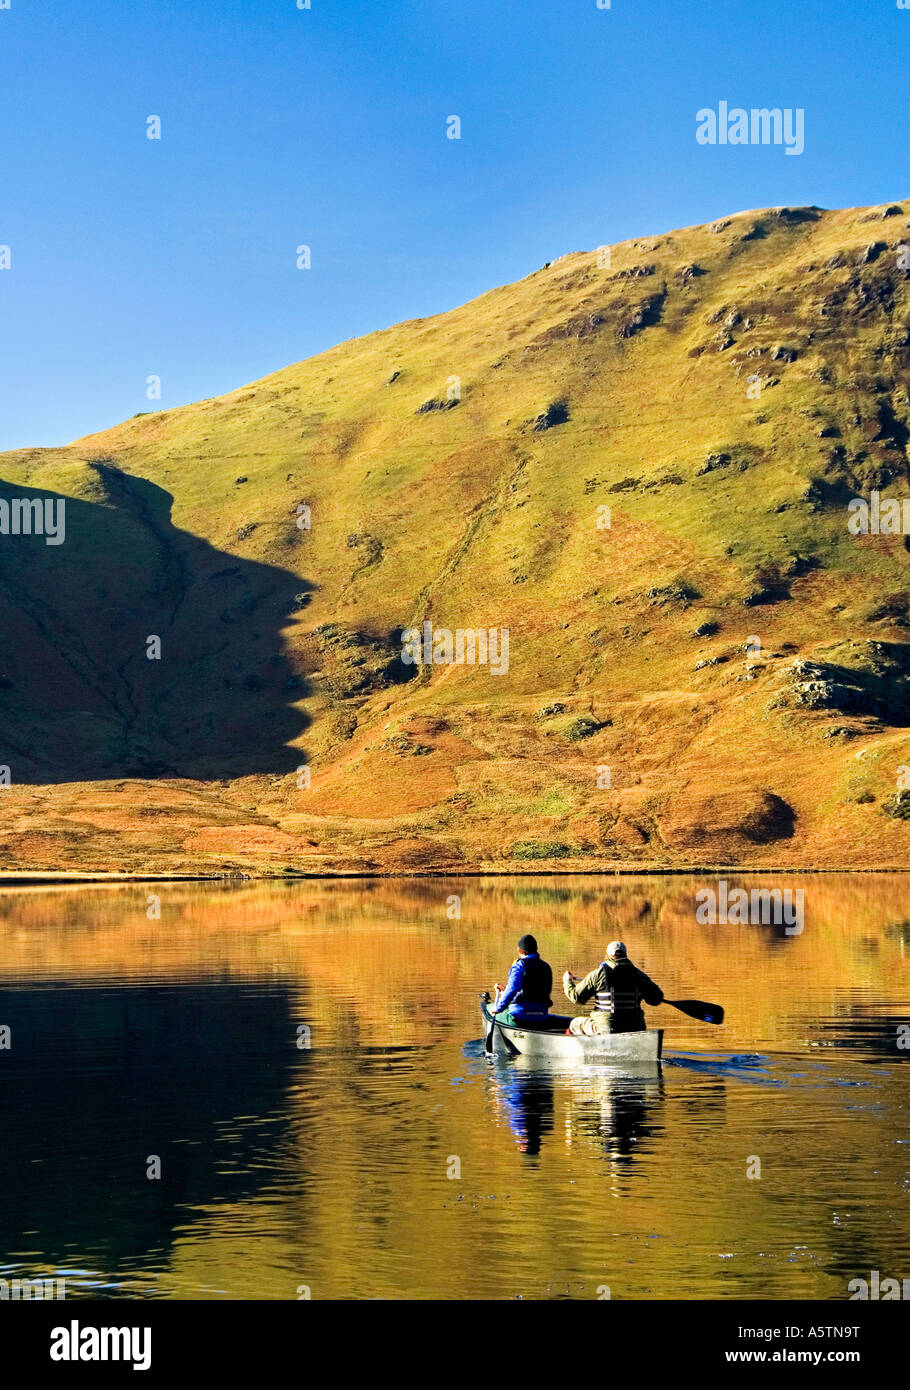 Deux personnes canoéistes sur Crummock Water, Lake District National Park, Cumbria, Angleterre, Royaume-Uni Banque D'Images